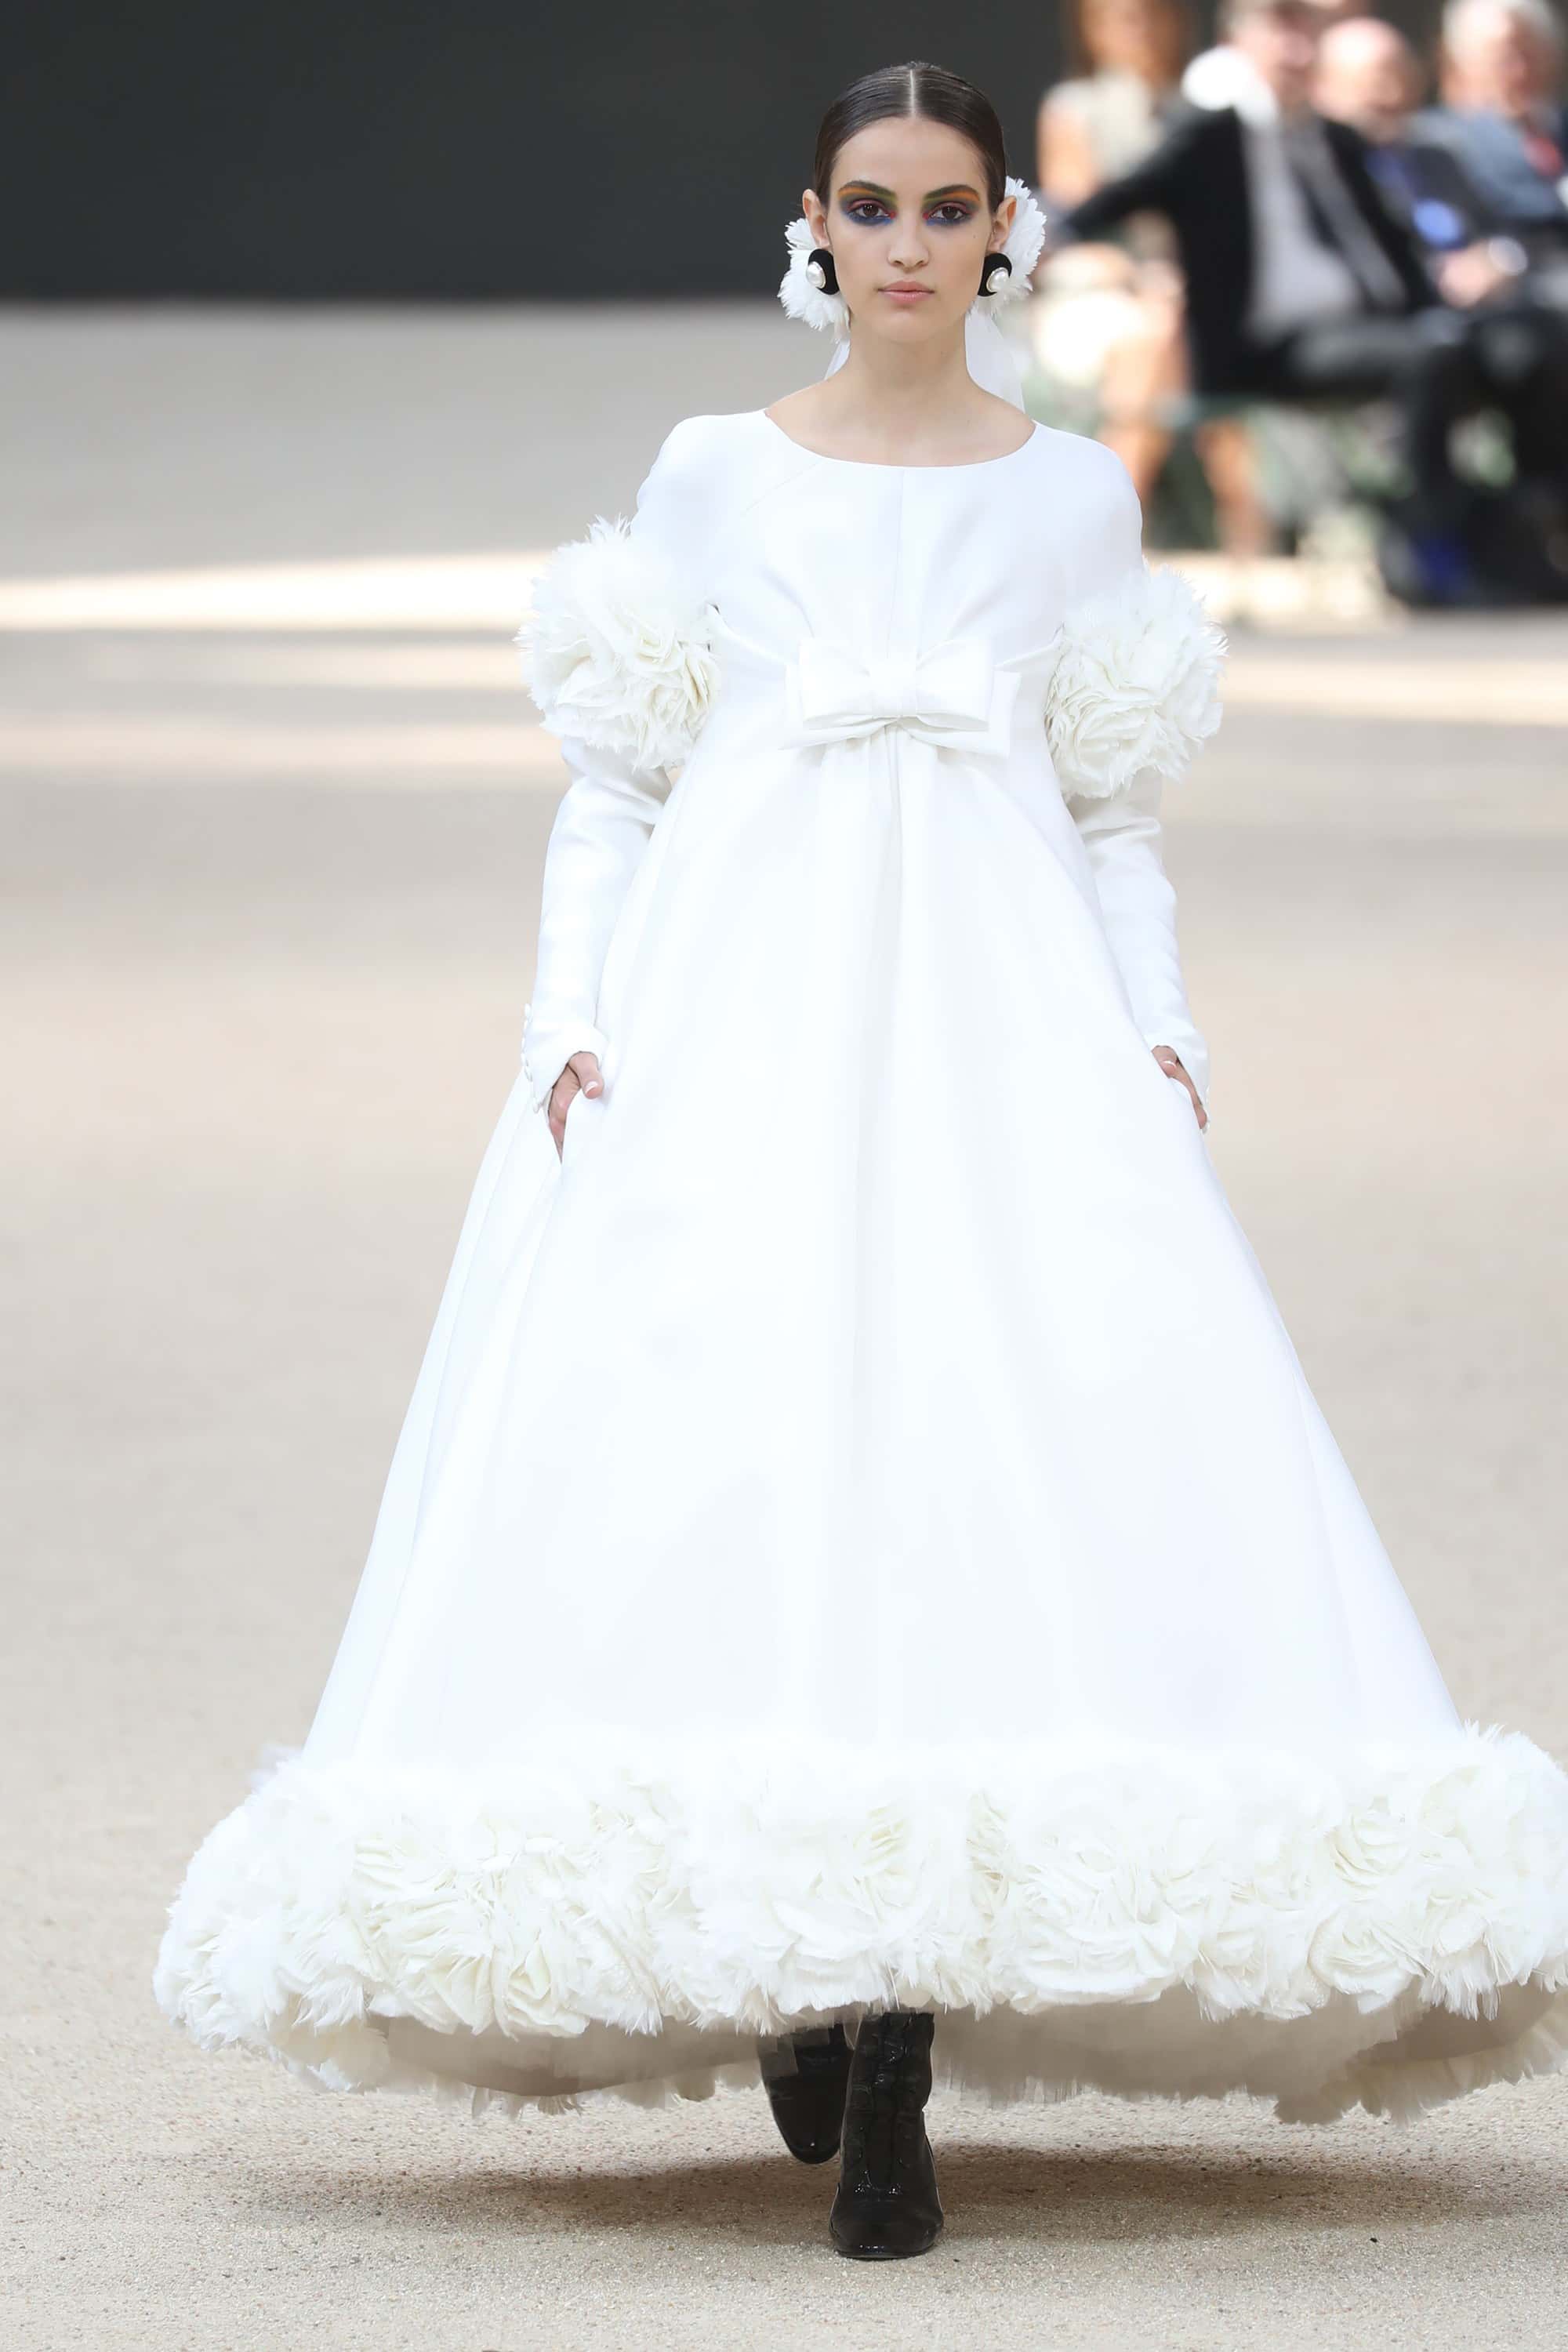 Camille Hurel en robe de mariée Karl Lagerfeld - Défilé Chanel Haute Couture 2017-2018